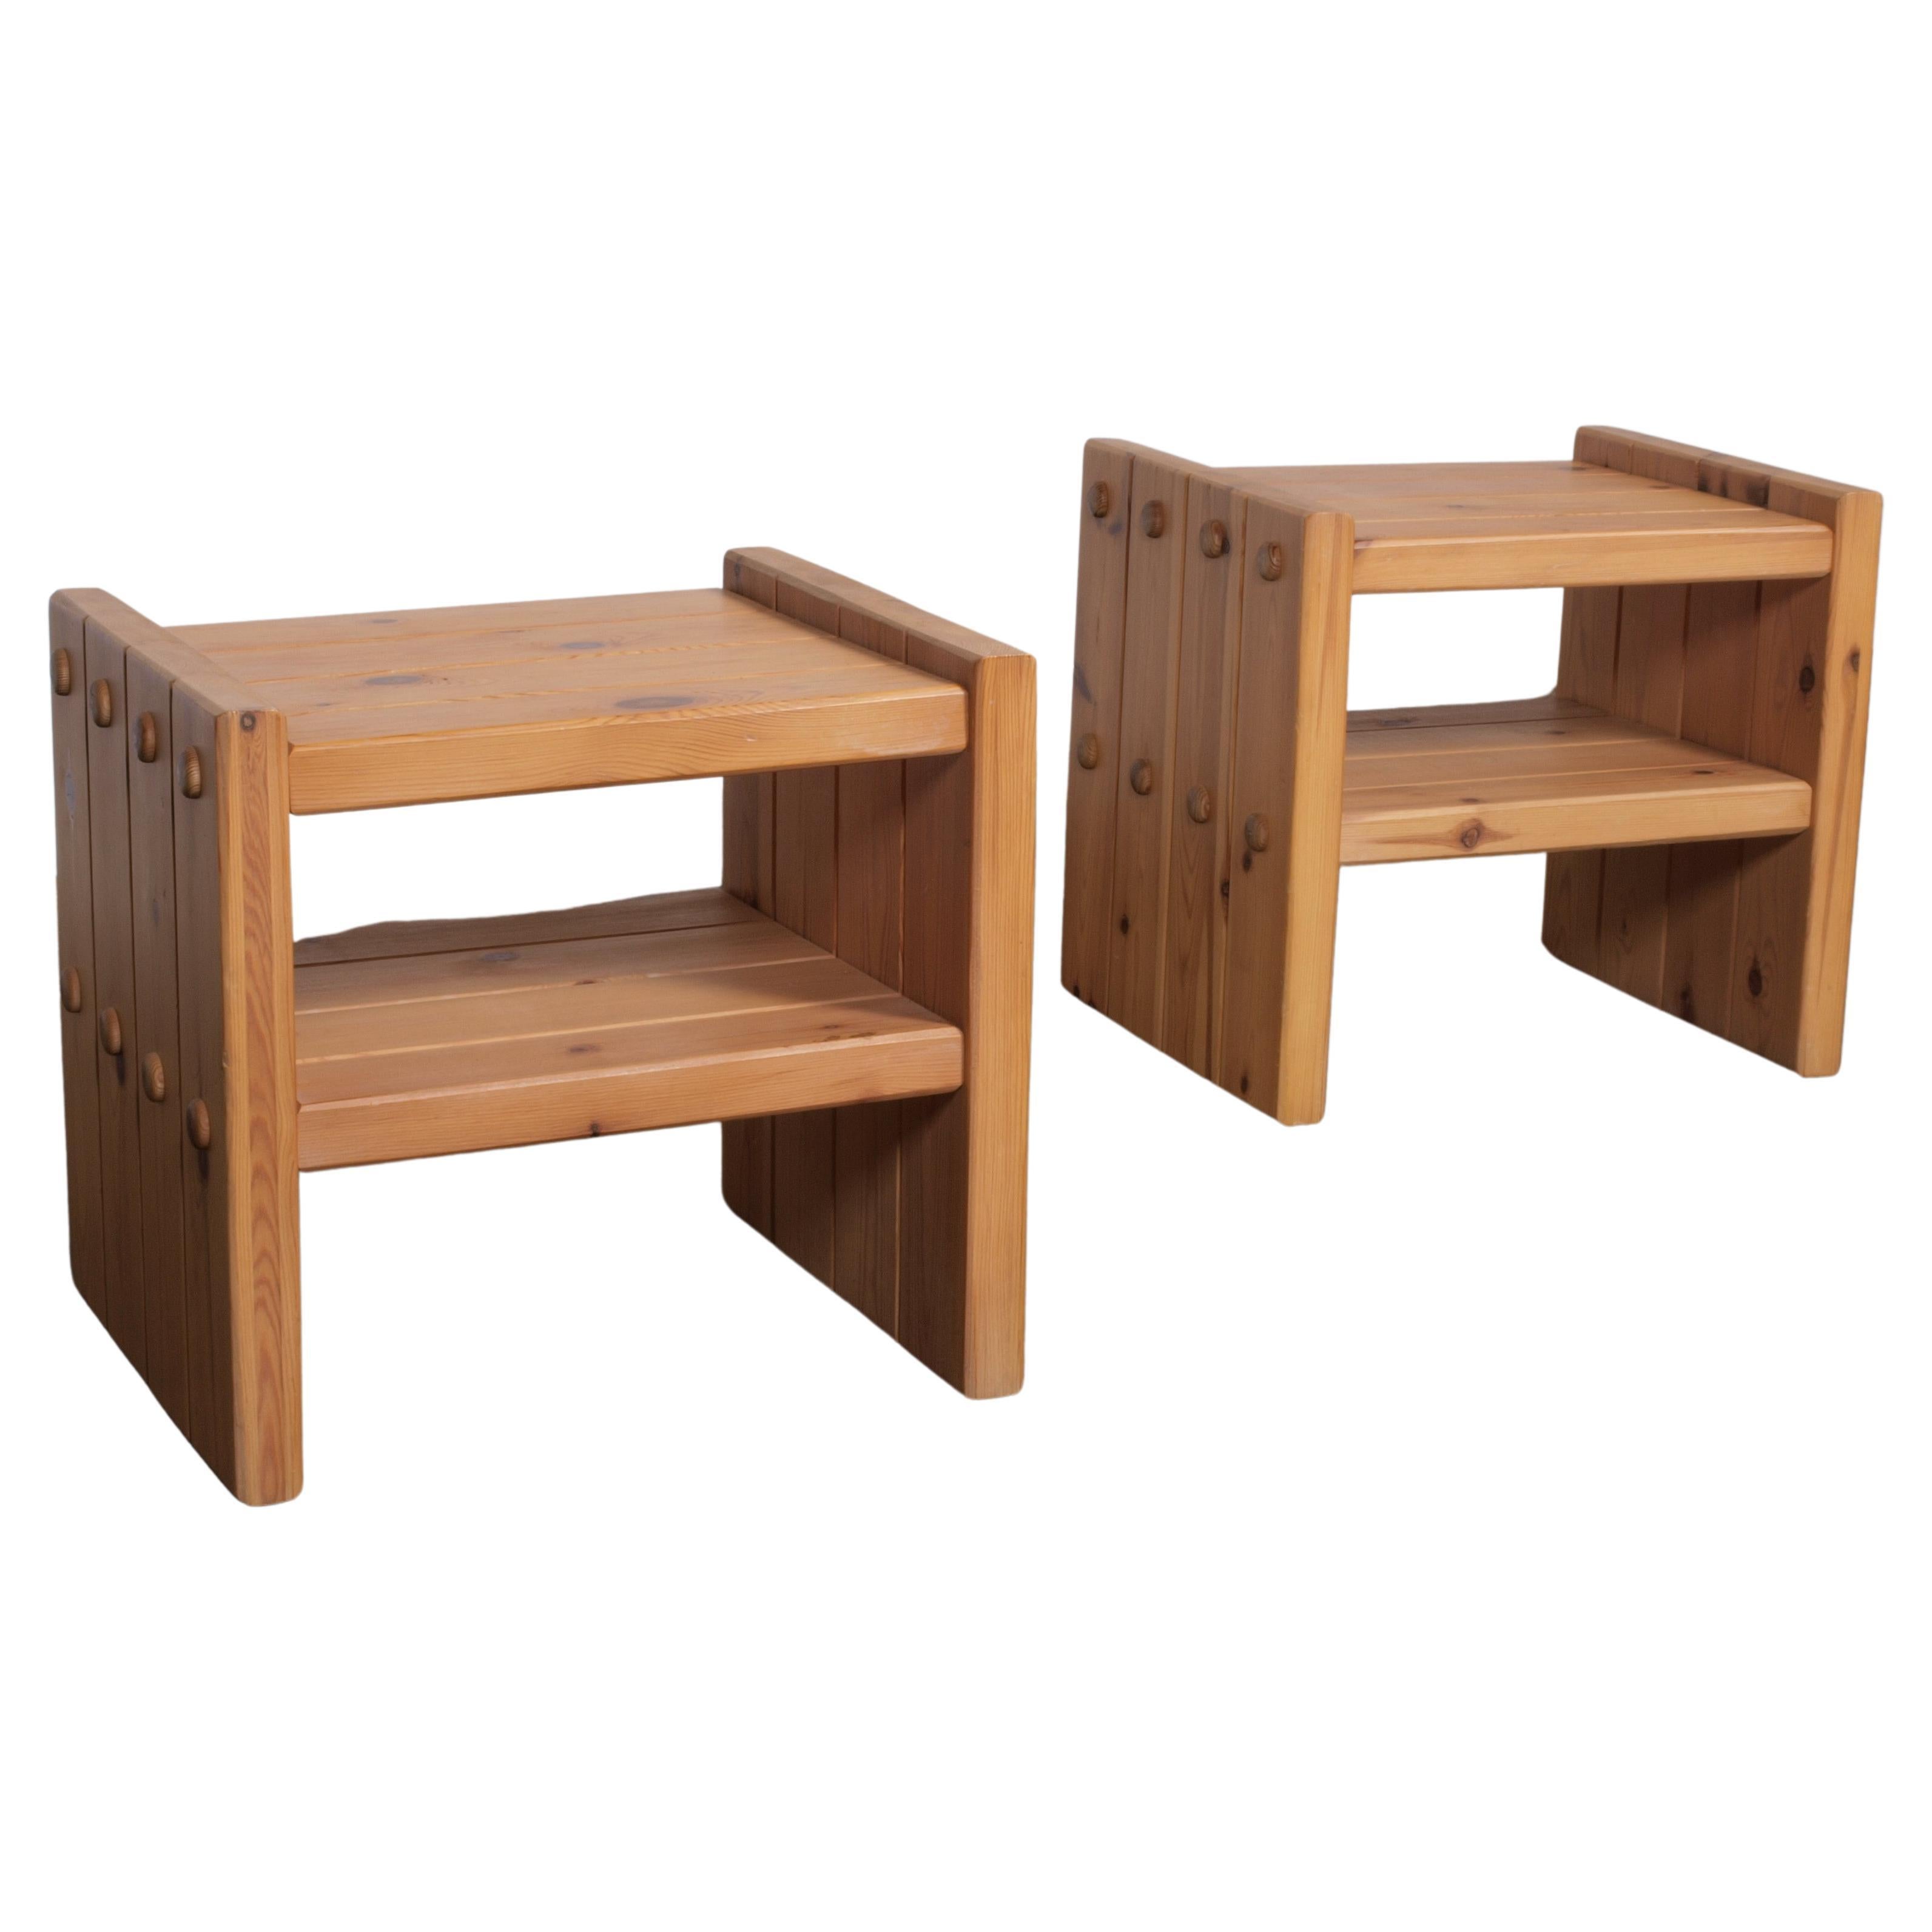 Danish Pine Wood Nightstand / Bedside Table